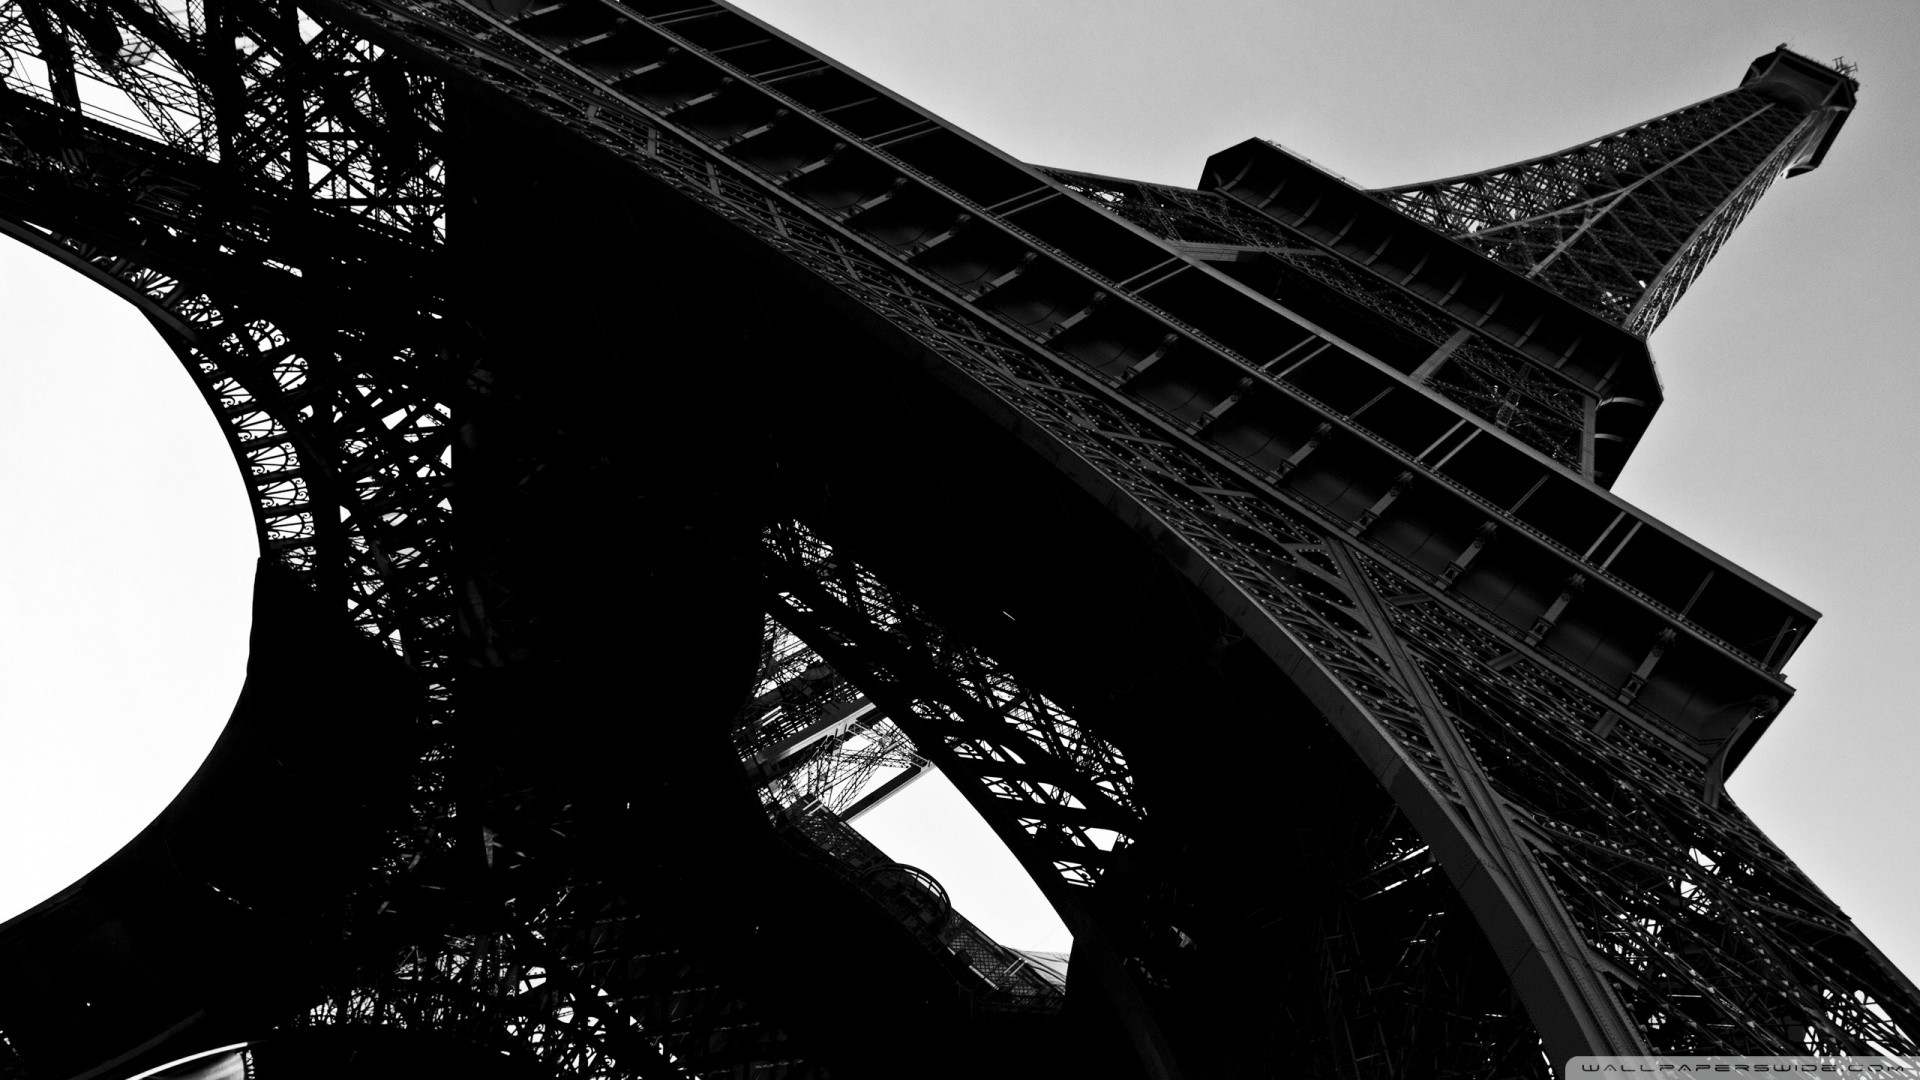 1920x1080 Paris images Bonjour! Paris HD wallpaper and background photos